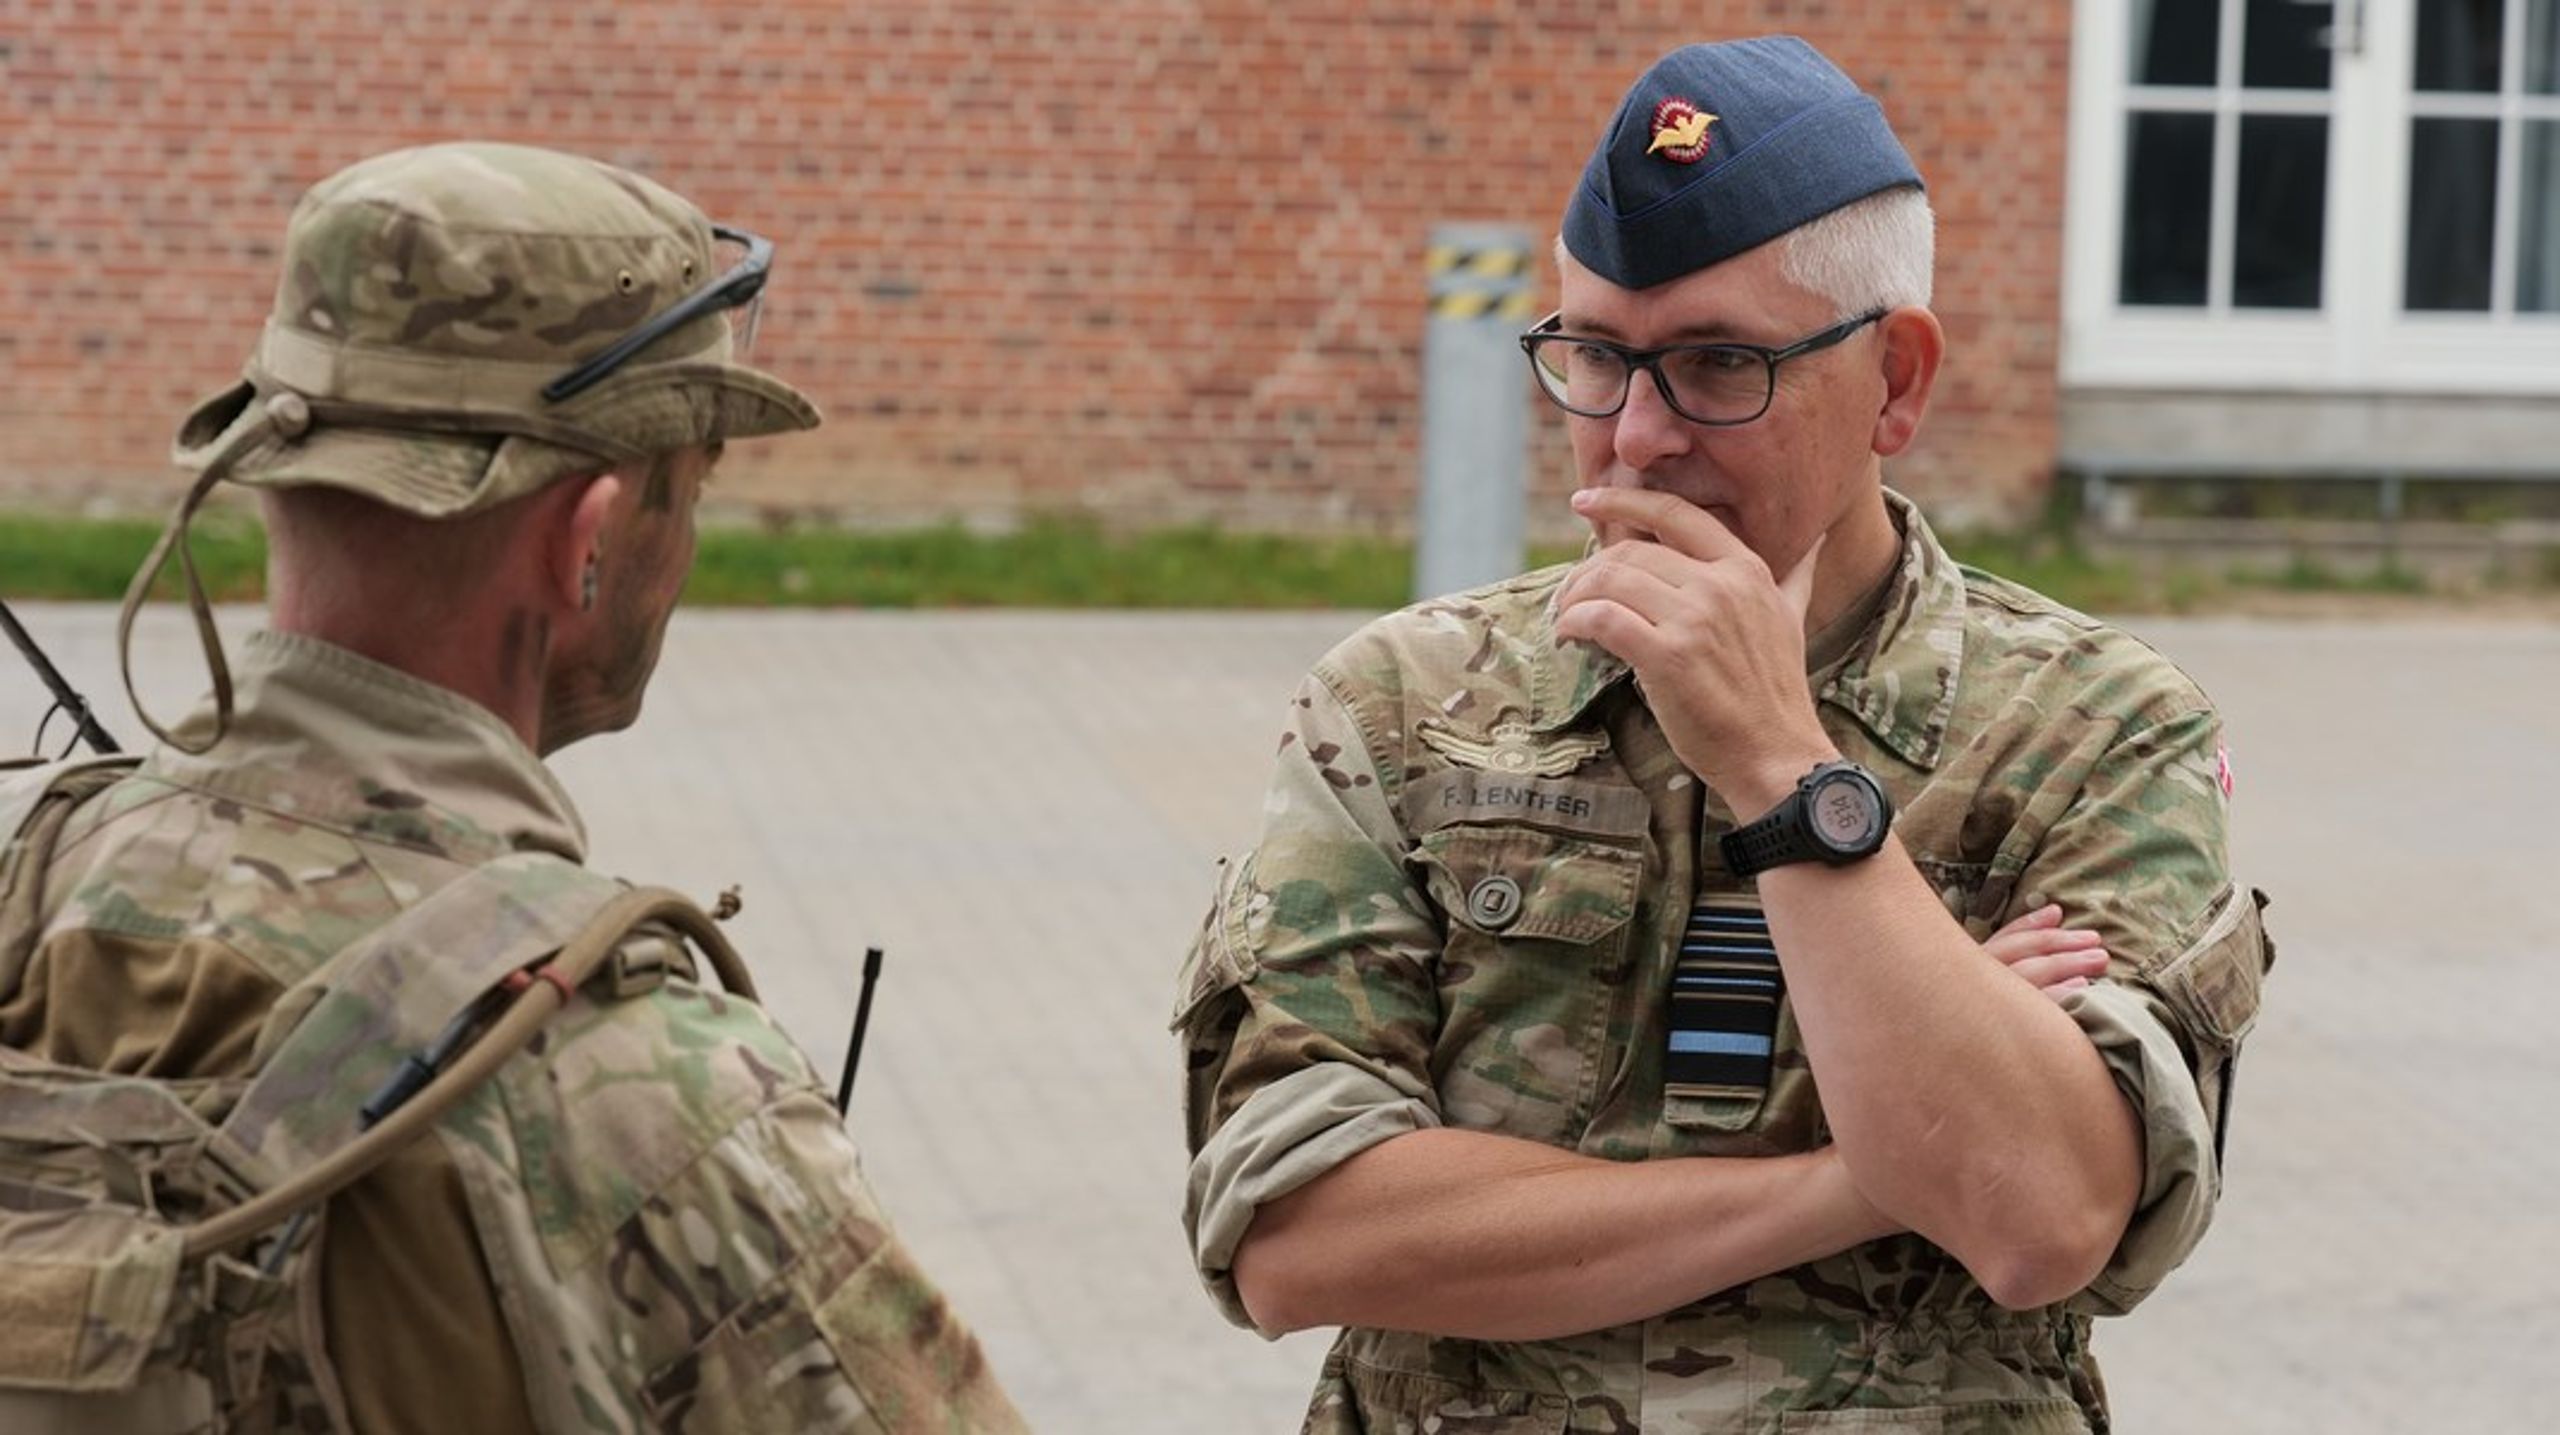 Forsvarschef Flemming Lentfer taler med en soldat under et besøg hos Livgarden i september i år.